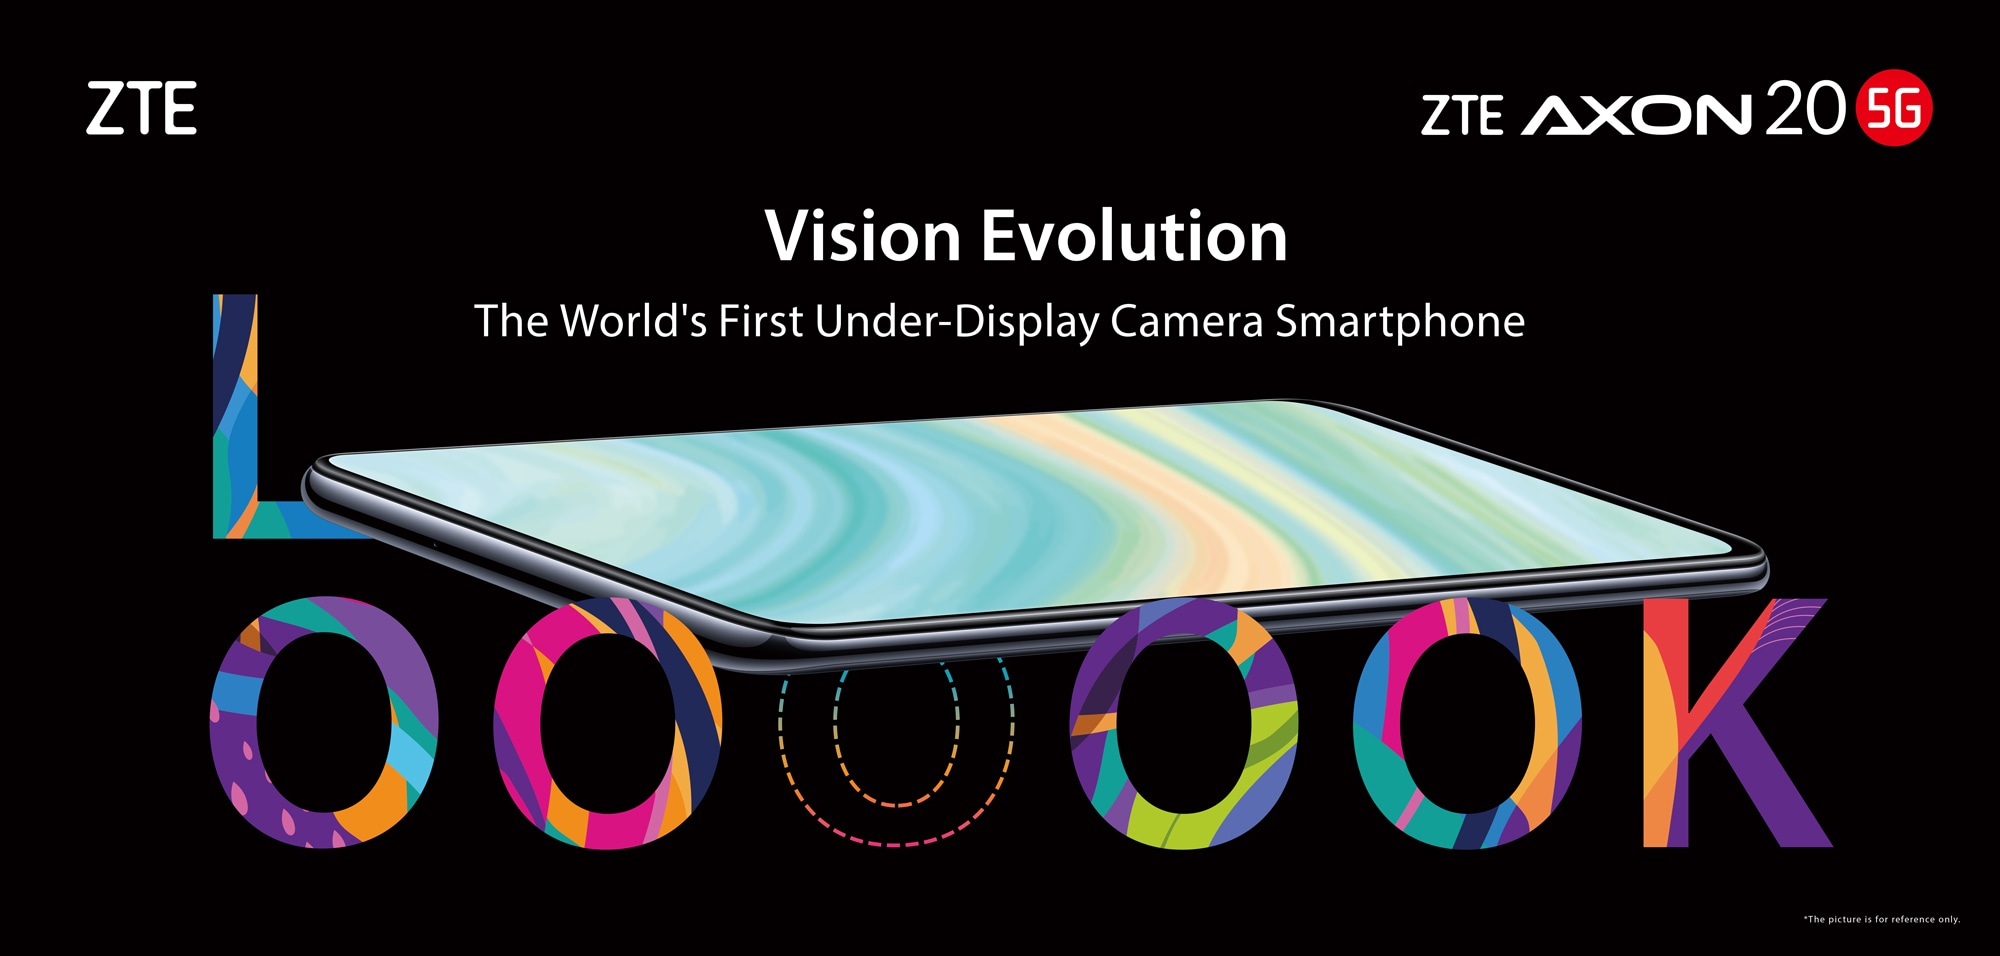 ZTE entra nella storia con il primo smartphone con fotocamera sotto il display: ZTE Axon 20 5G arriva a 449€ (aggiornato)